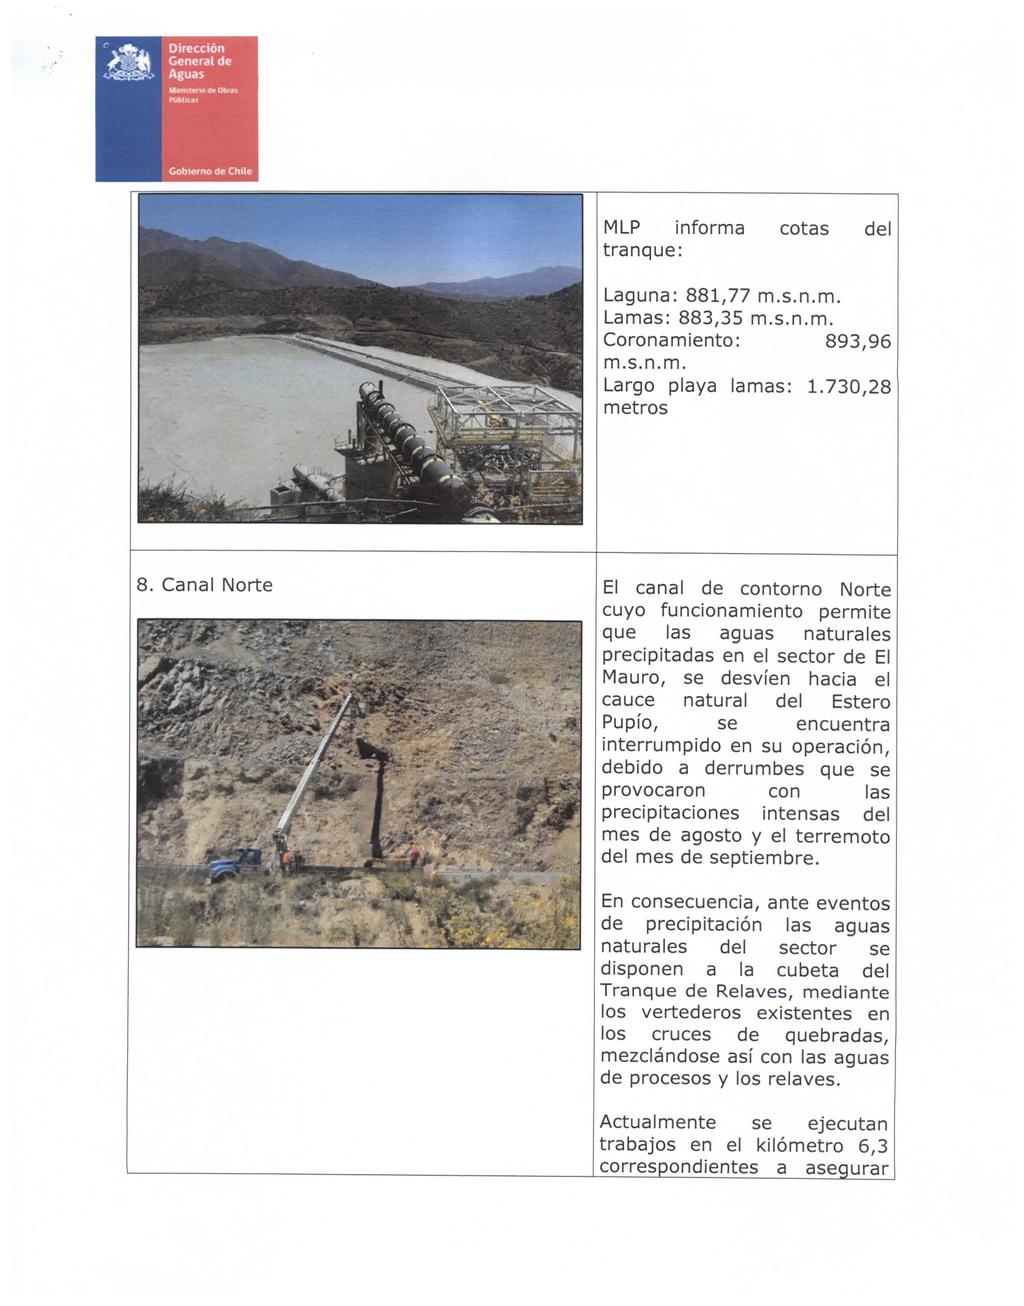 Dirección General de Aguas Gobierno <Ss Chile MLP informa tranque: cotas del Laguna: 881,77 m.s.n.m. Lamas: 883,35 m.s.n.m. Coronamiento: 893,96 m.s.n.m. Largo playa lamas: 1.